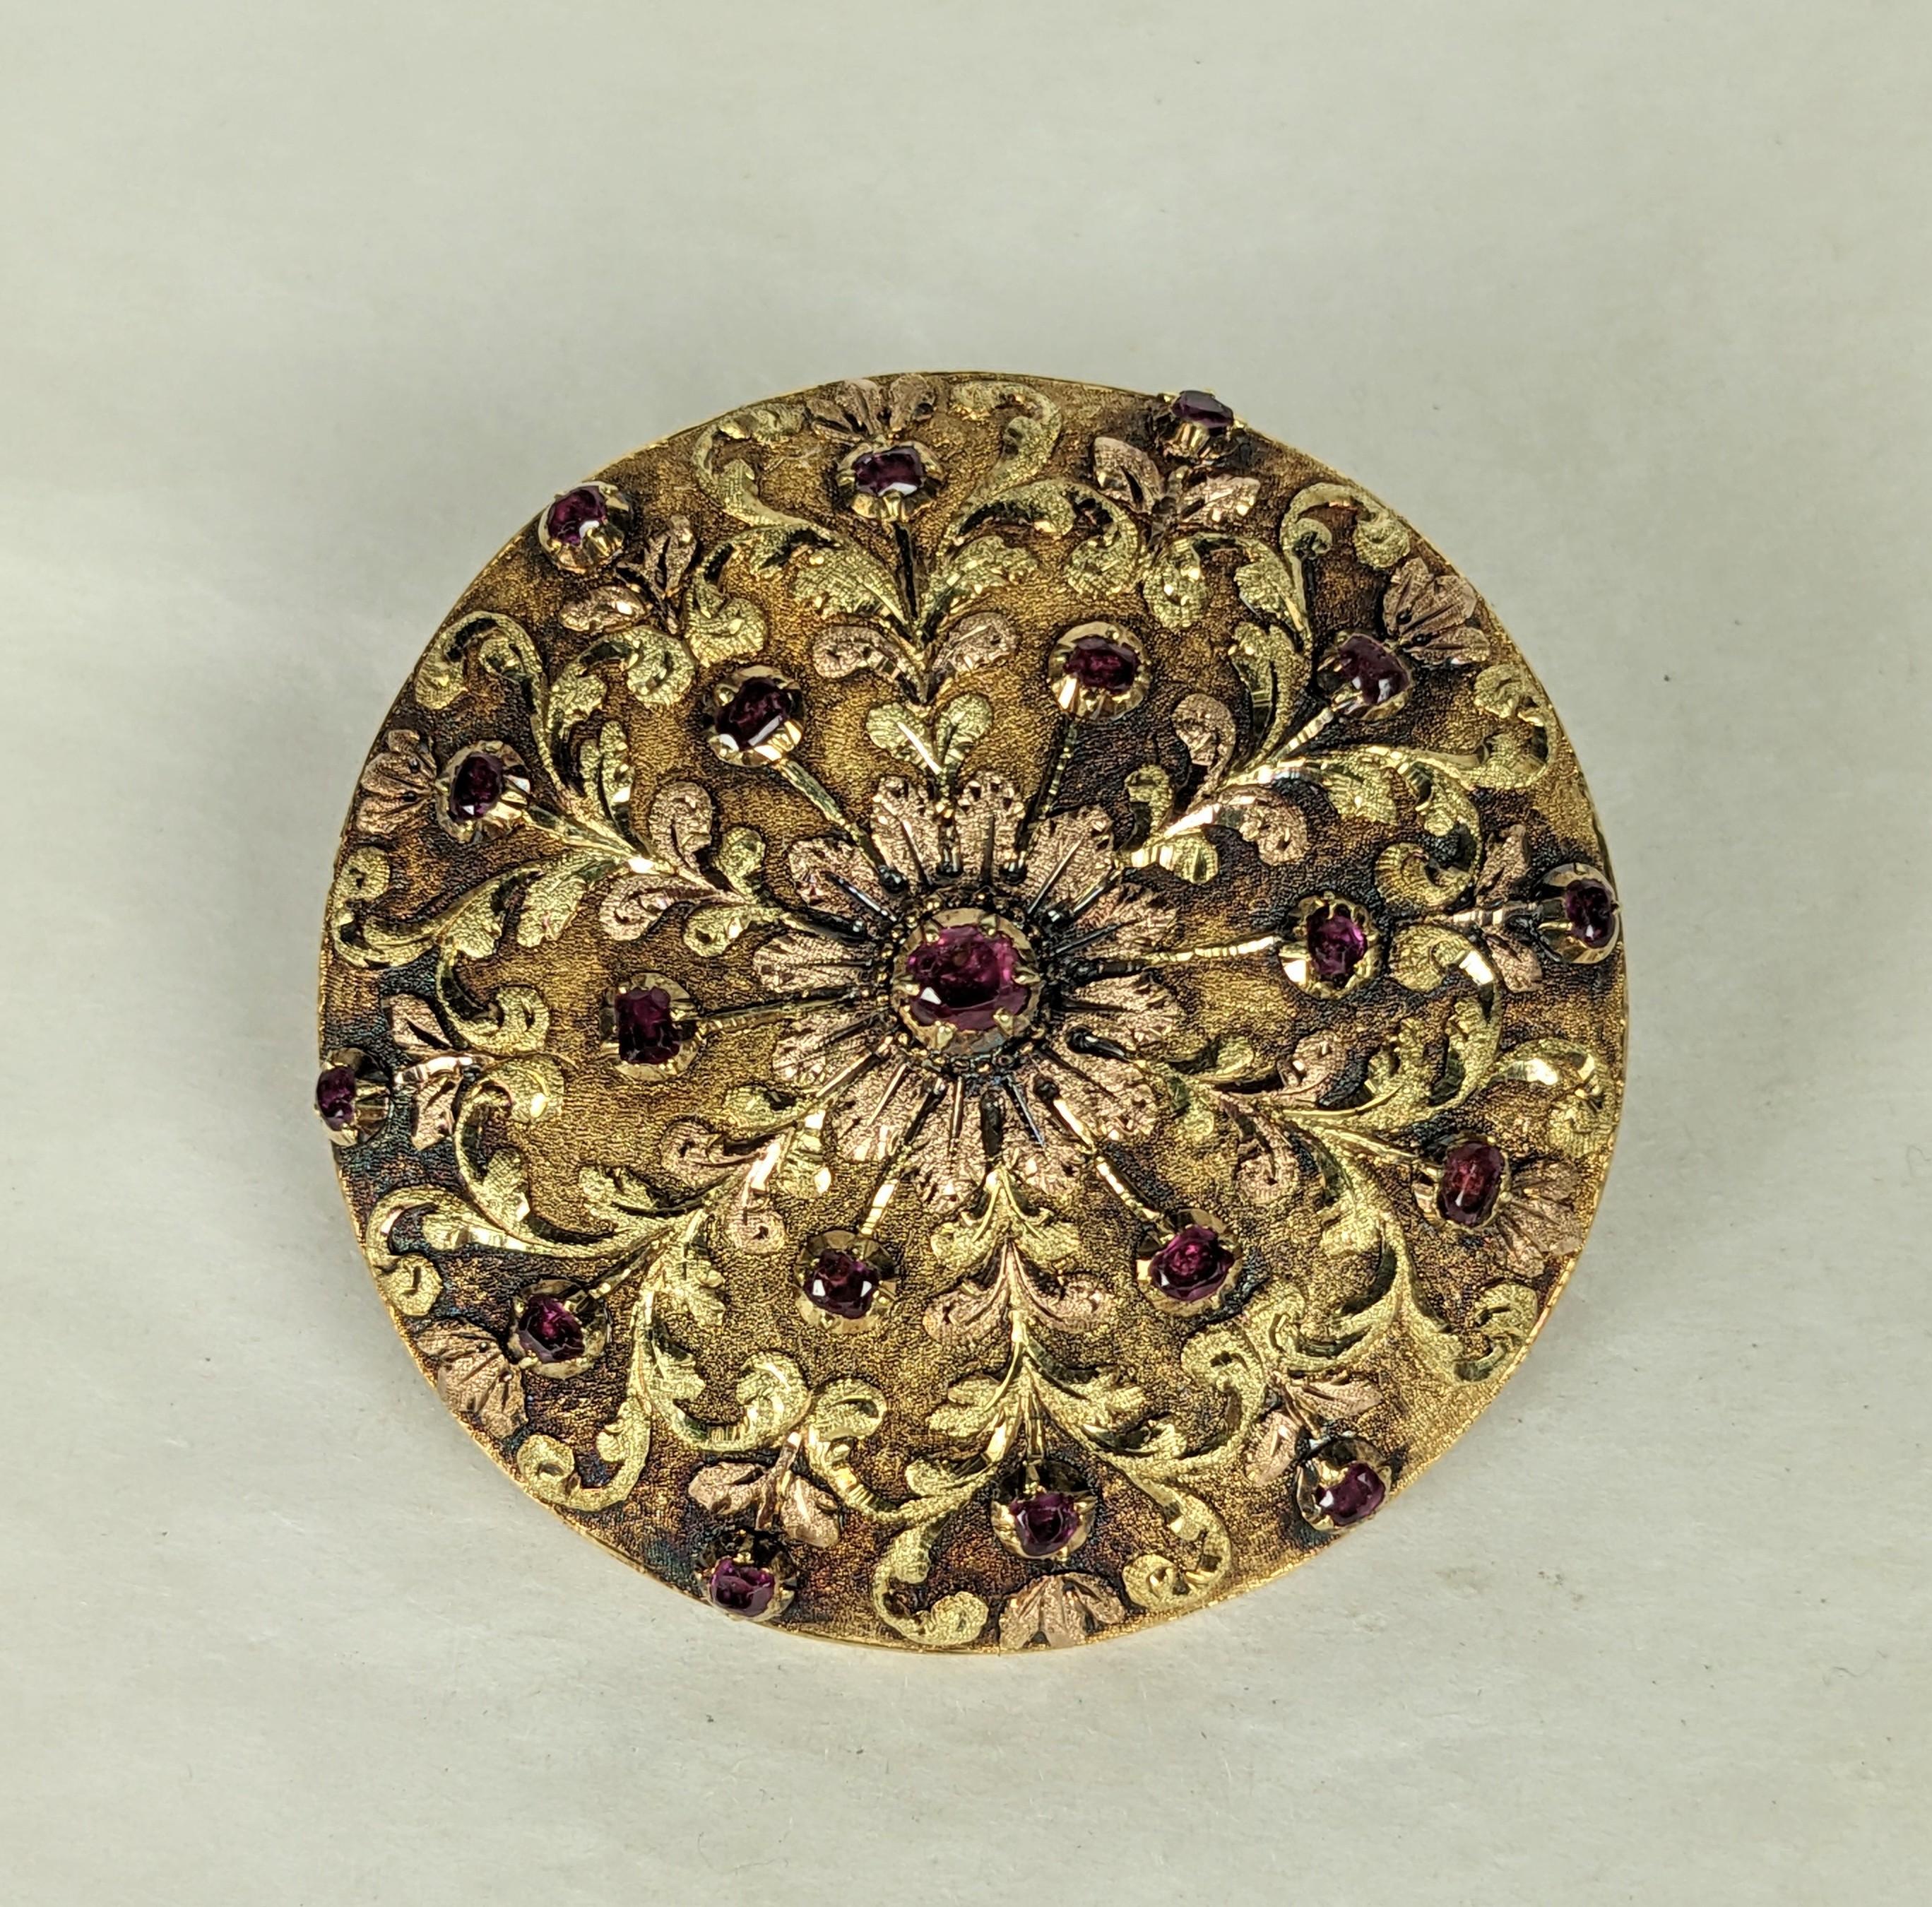 Französische dreifarbige Gold-Rubin-Brosche in 18k Gold aus dem 19. Jahrhundert. Ursprünglich eine Abdeckung für eine schicke Taschenuhr, wurde diese in der Zeit in eine Brosche mit Ballen für Anhänger umgewandelt. Aufwändige handgefertigte